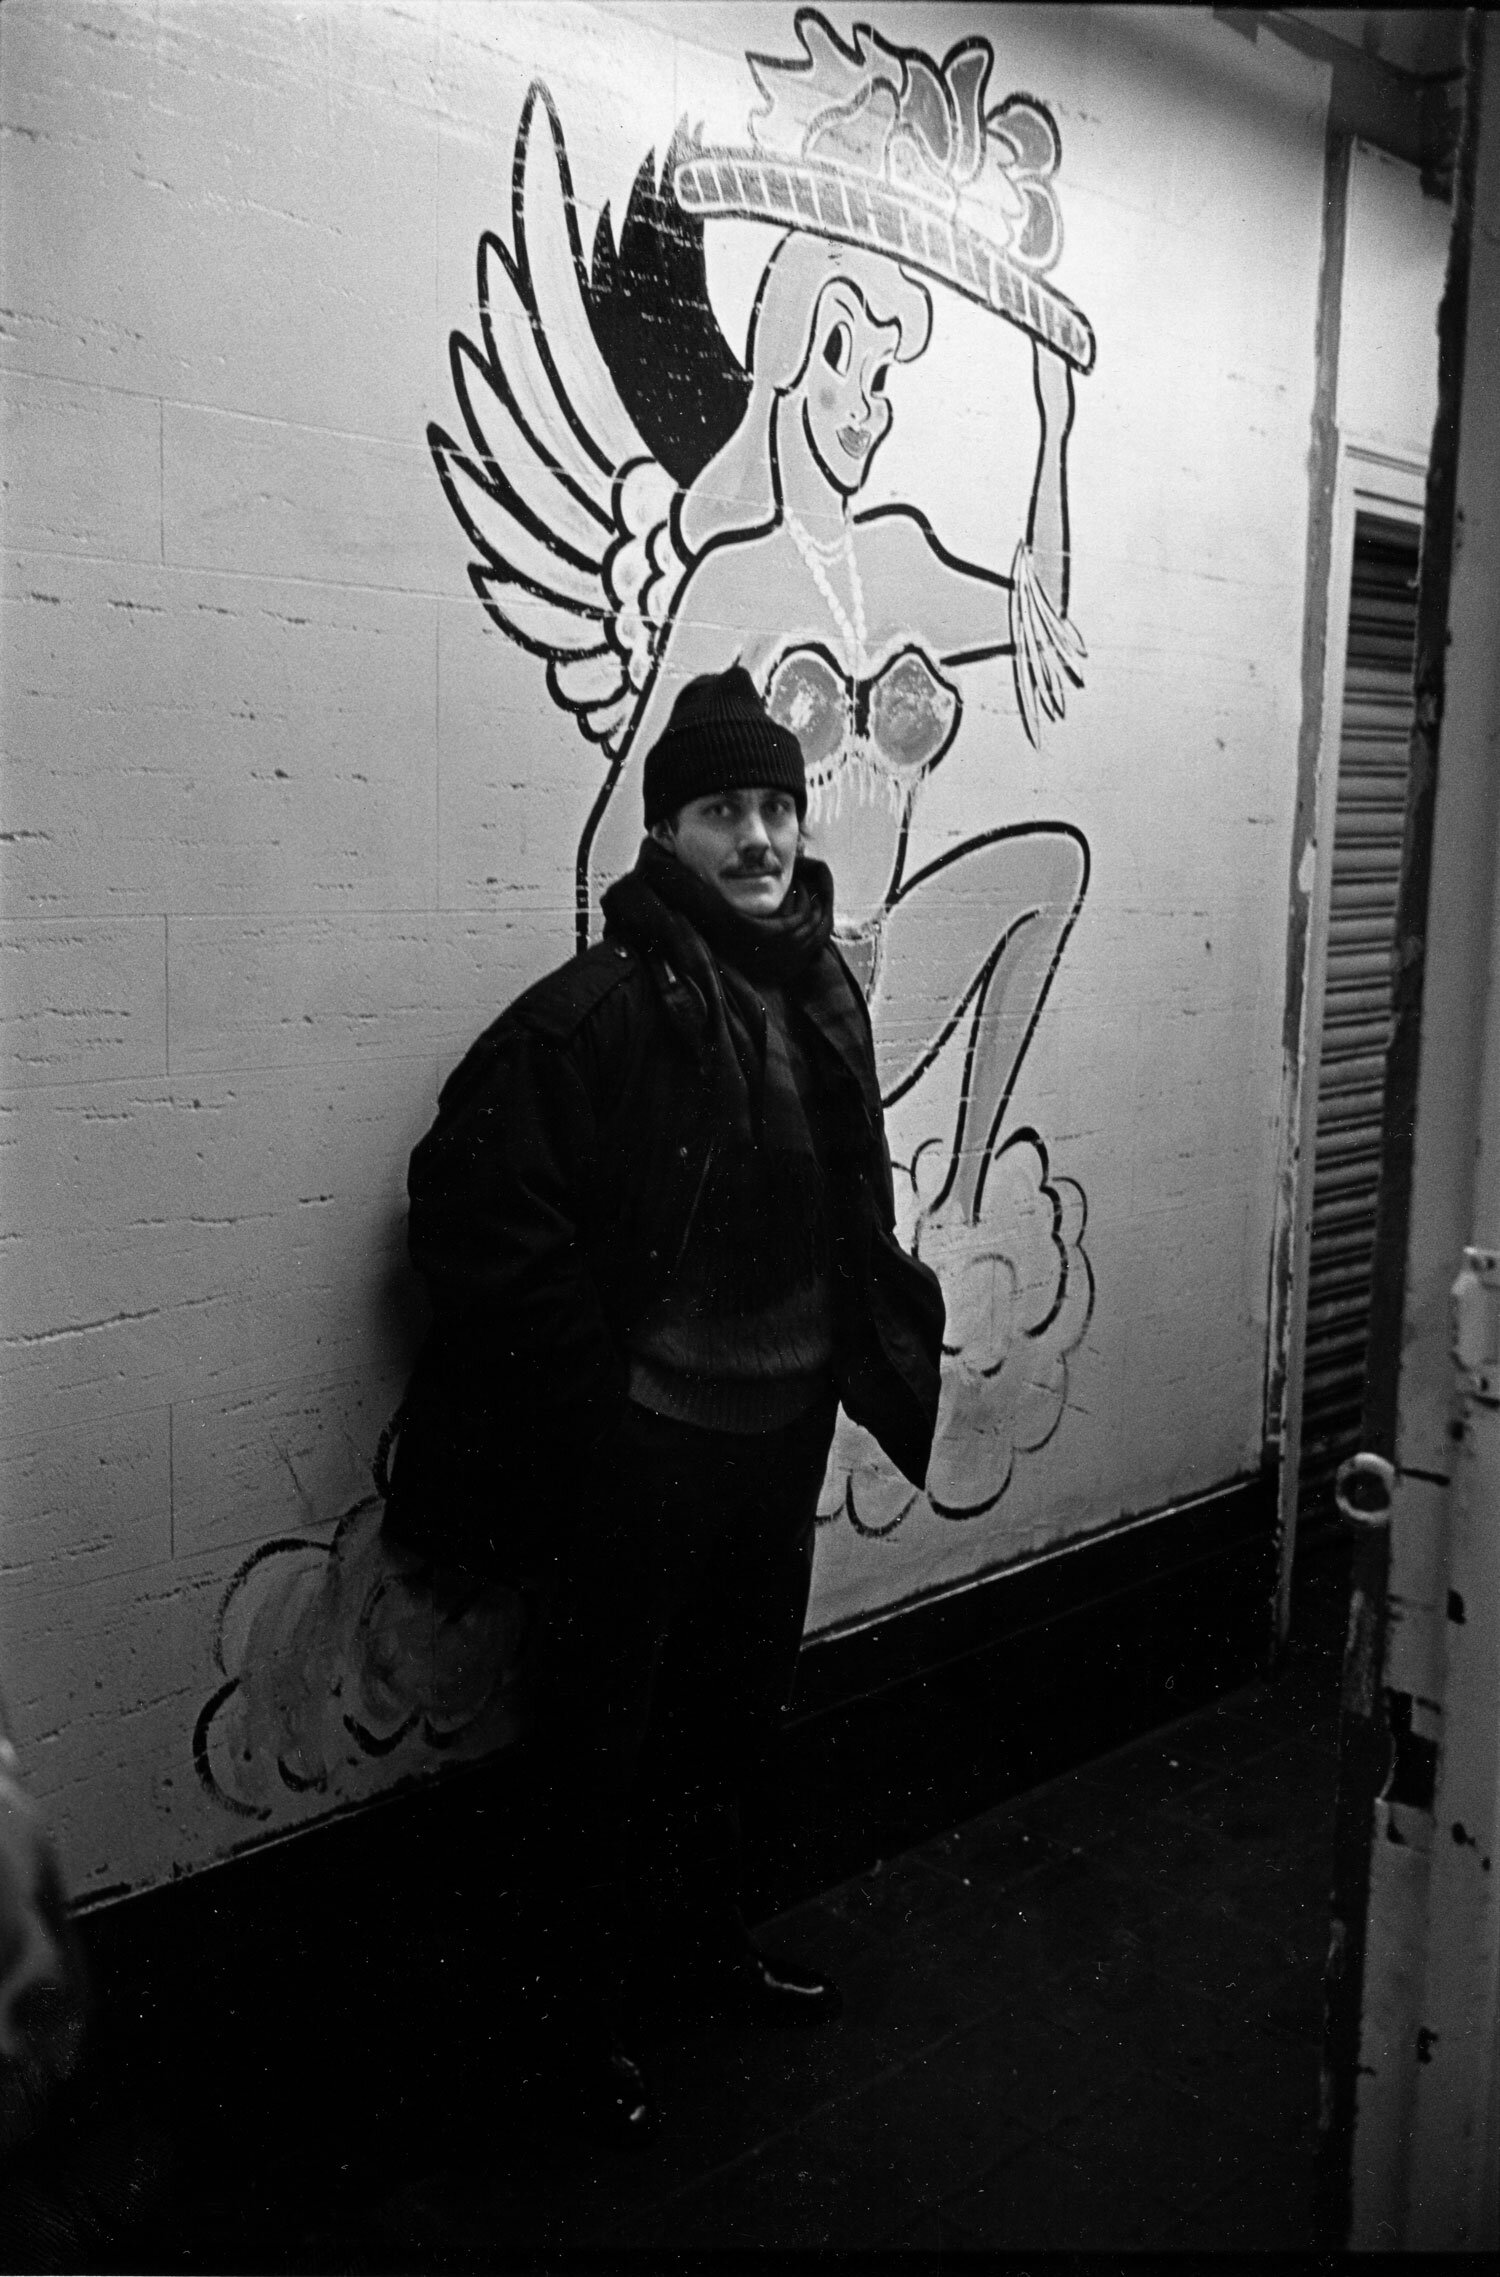  On 42nd Street, New York, 1986  Photo: Abe Frajndlich 